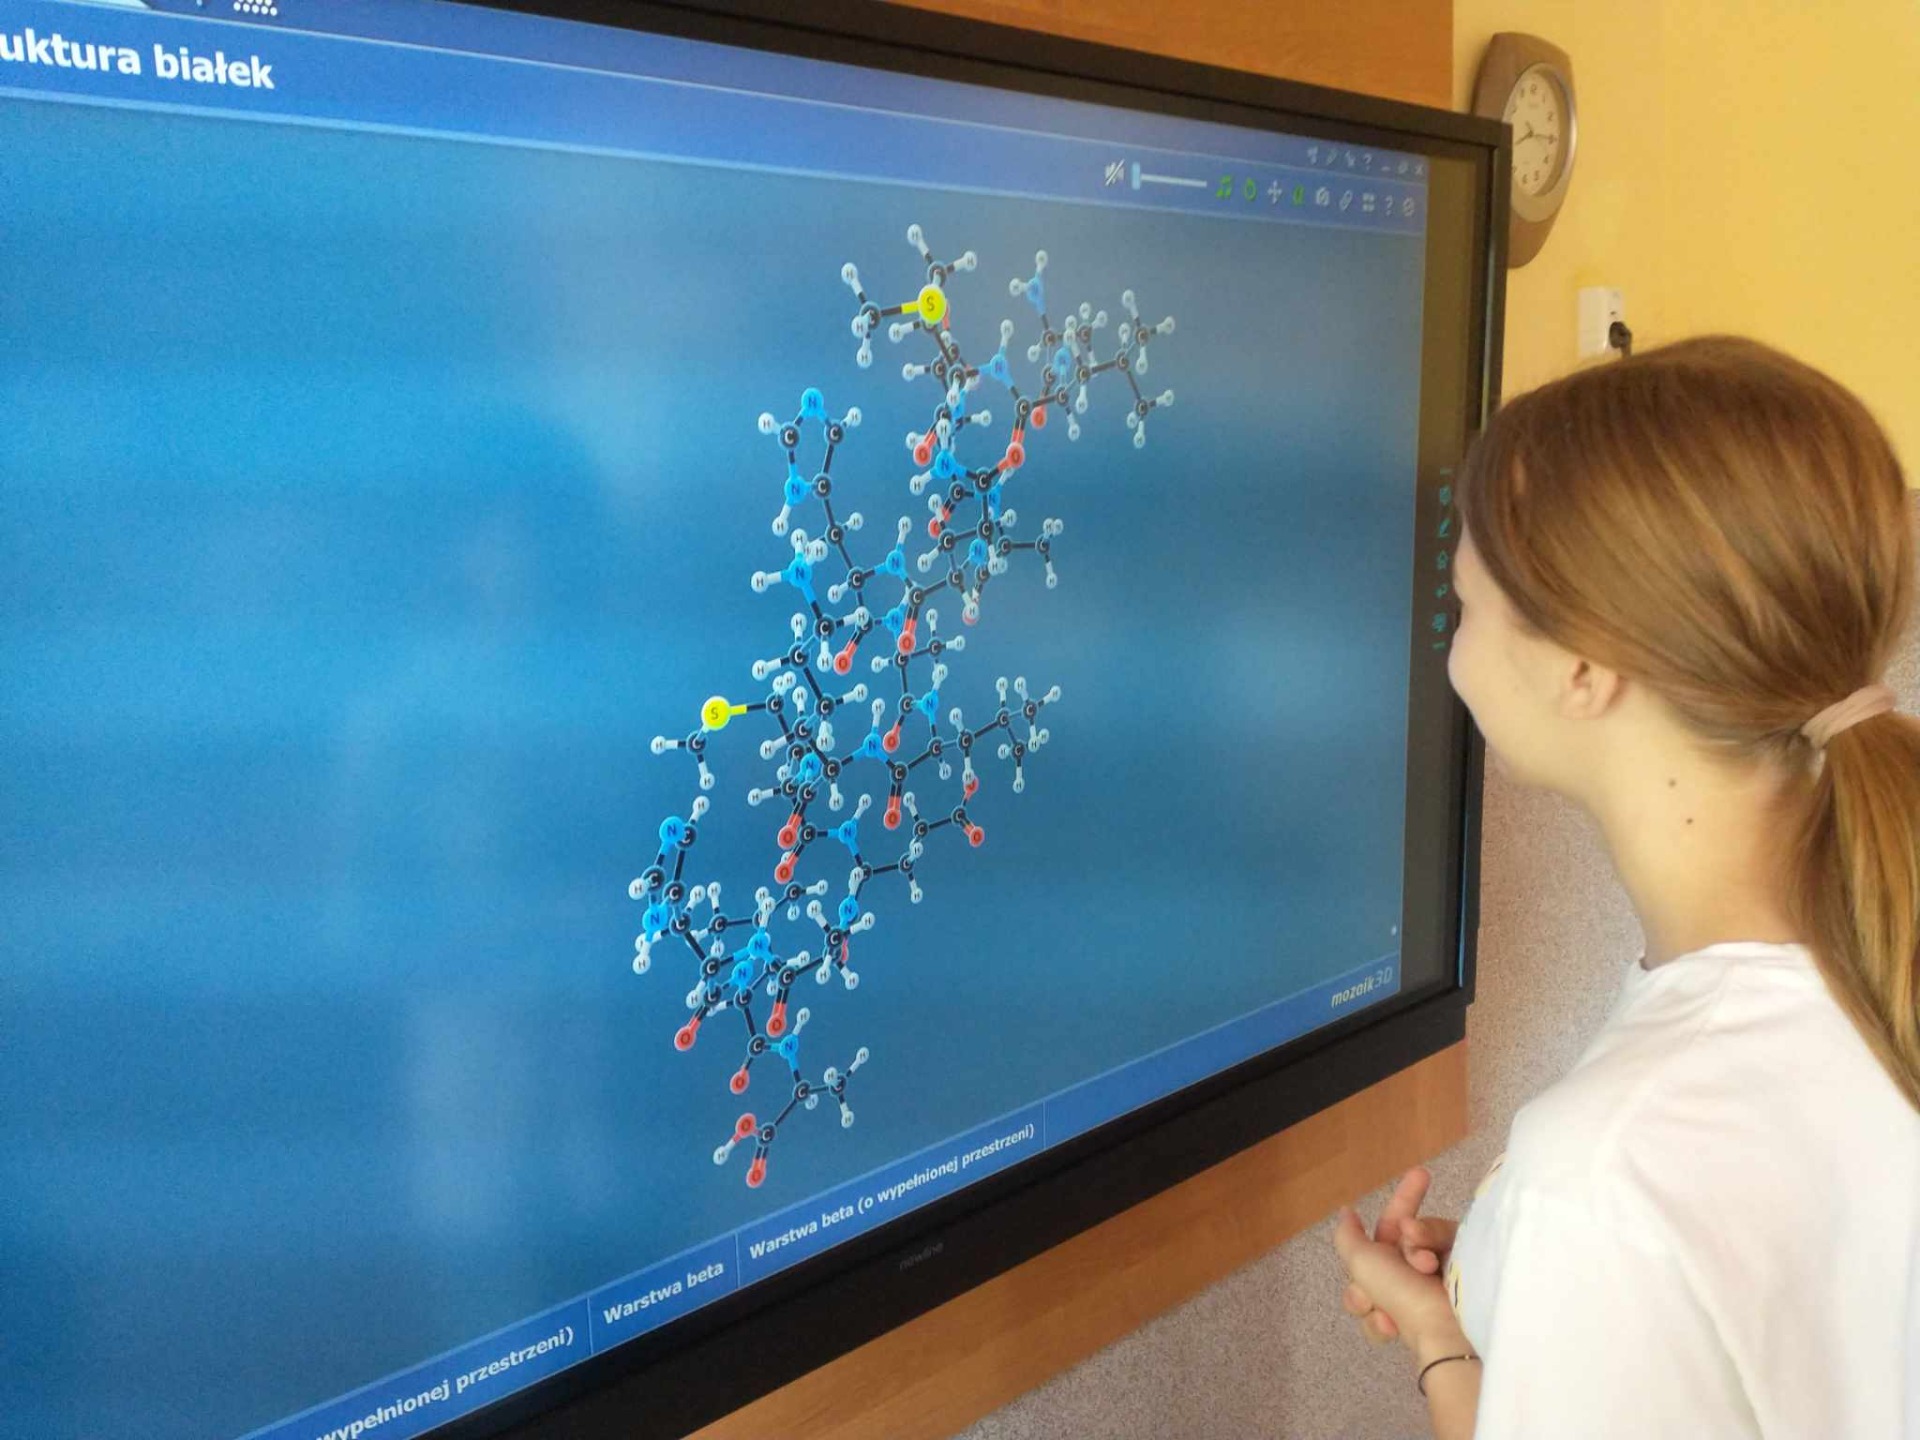 Struktura białka - model 3D wyświetlany na monitorze interaktywnym